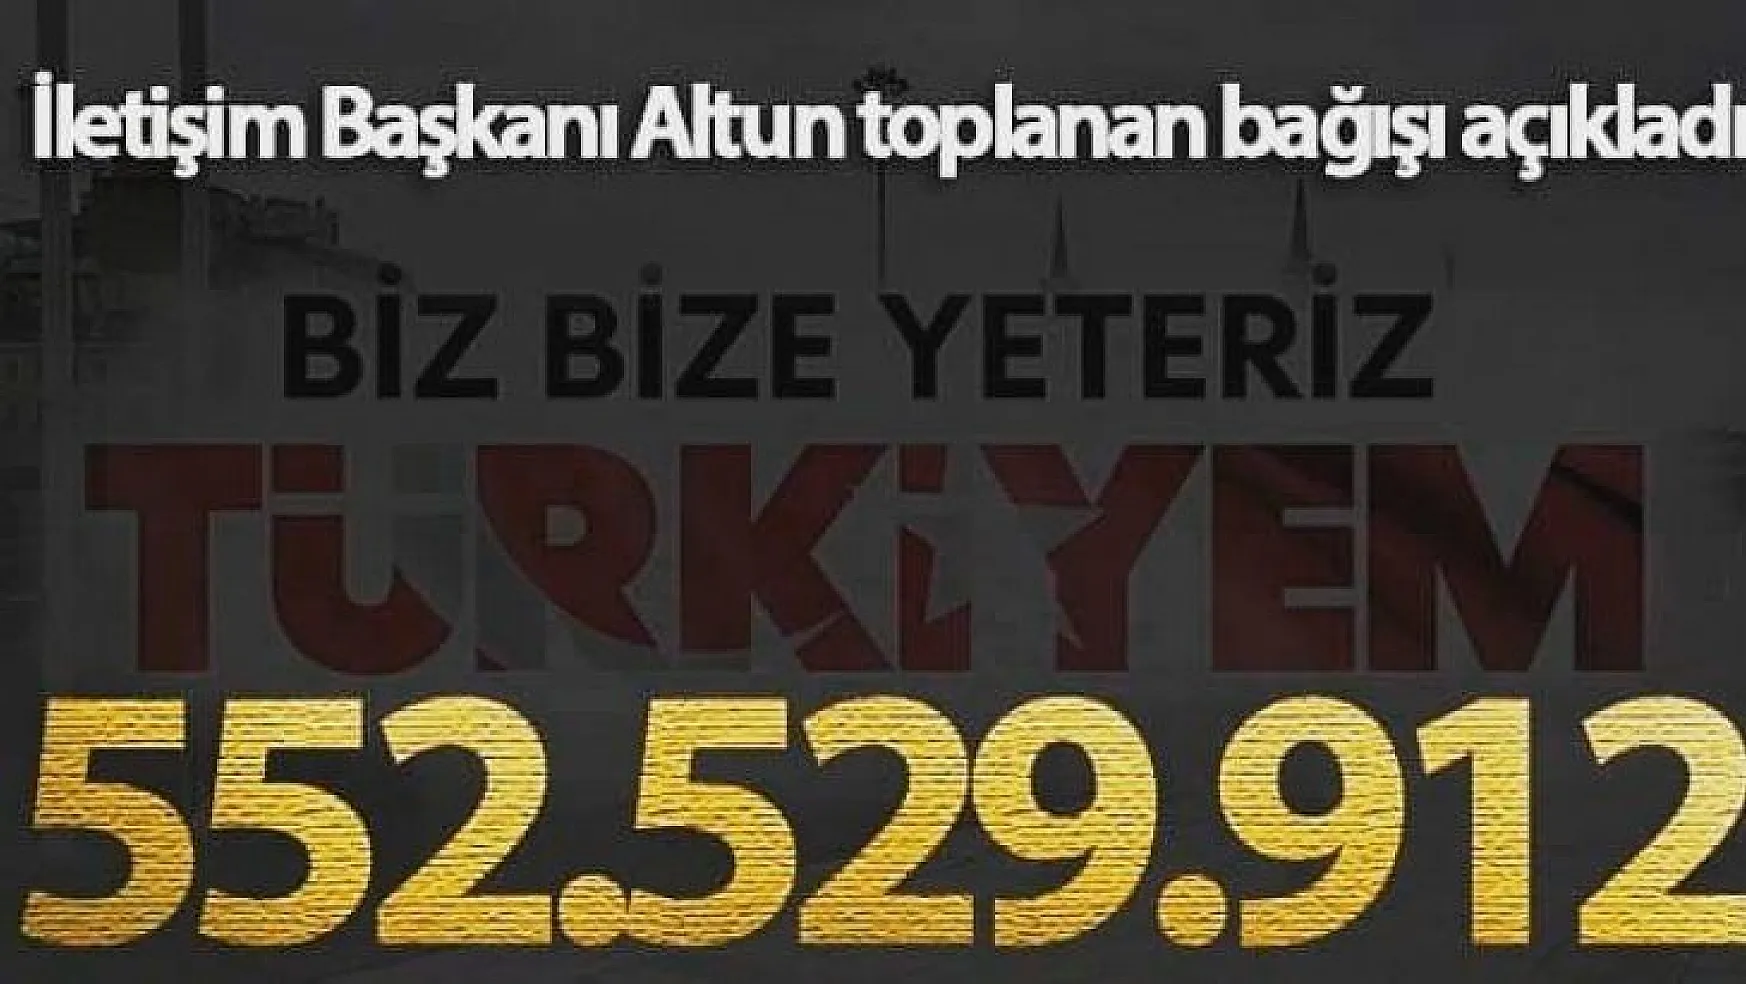 552 milyon 529 bin 912 Türk lirası toplandı